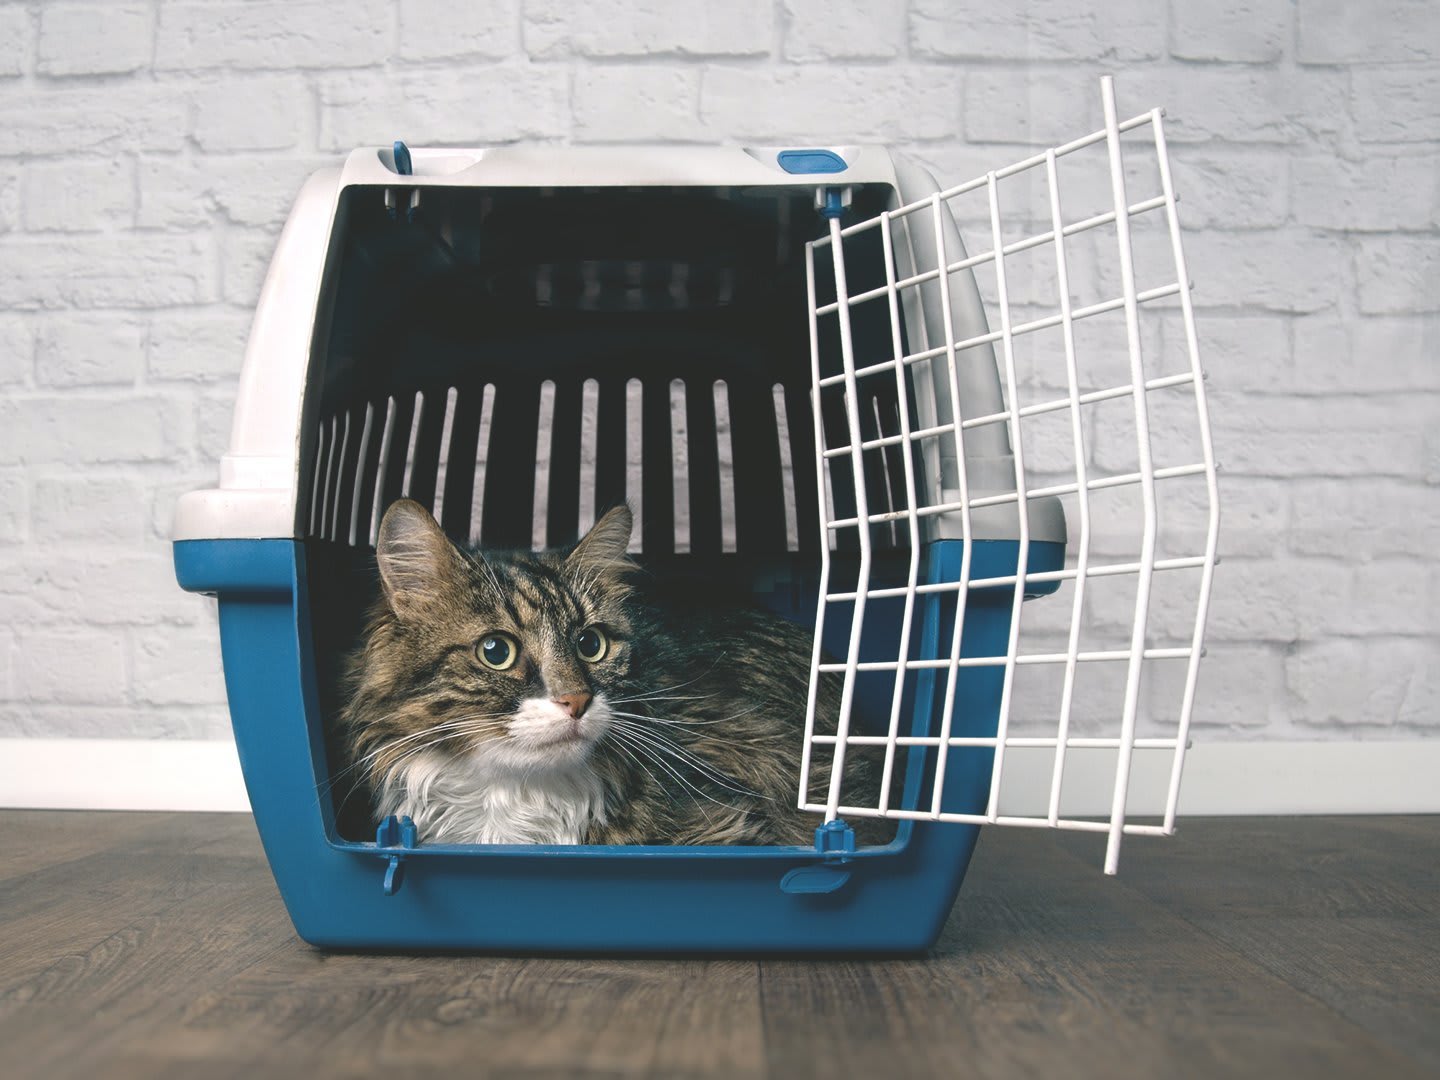 Das Bild zeigt eine Katze in einer blau-weißen Transportbox, die geöffnet ist und auf dem Boden steht. 